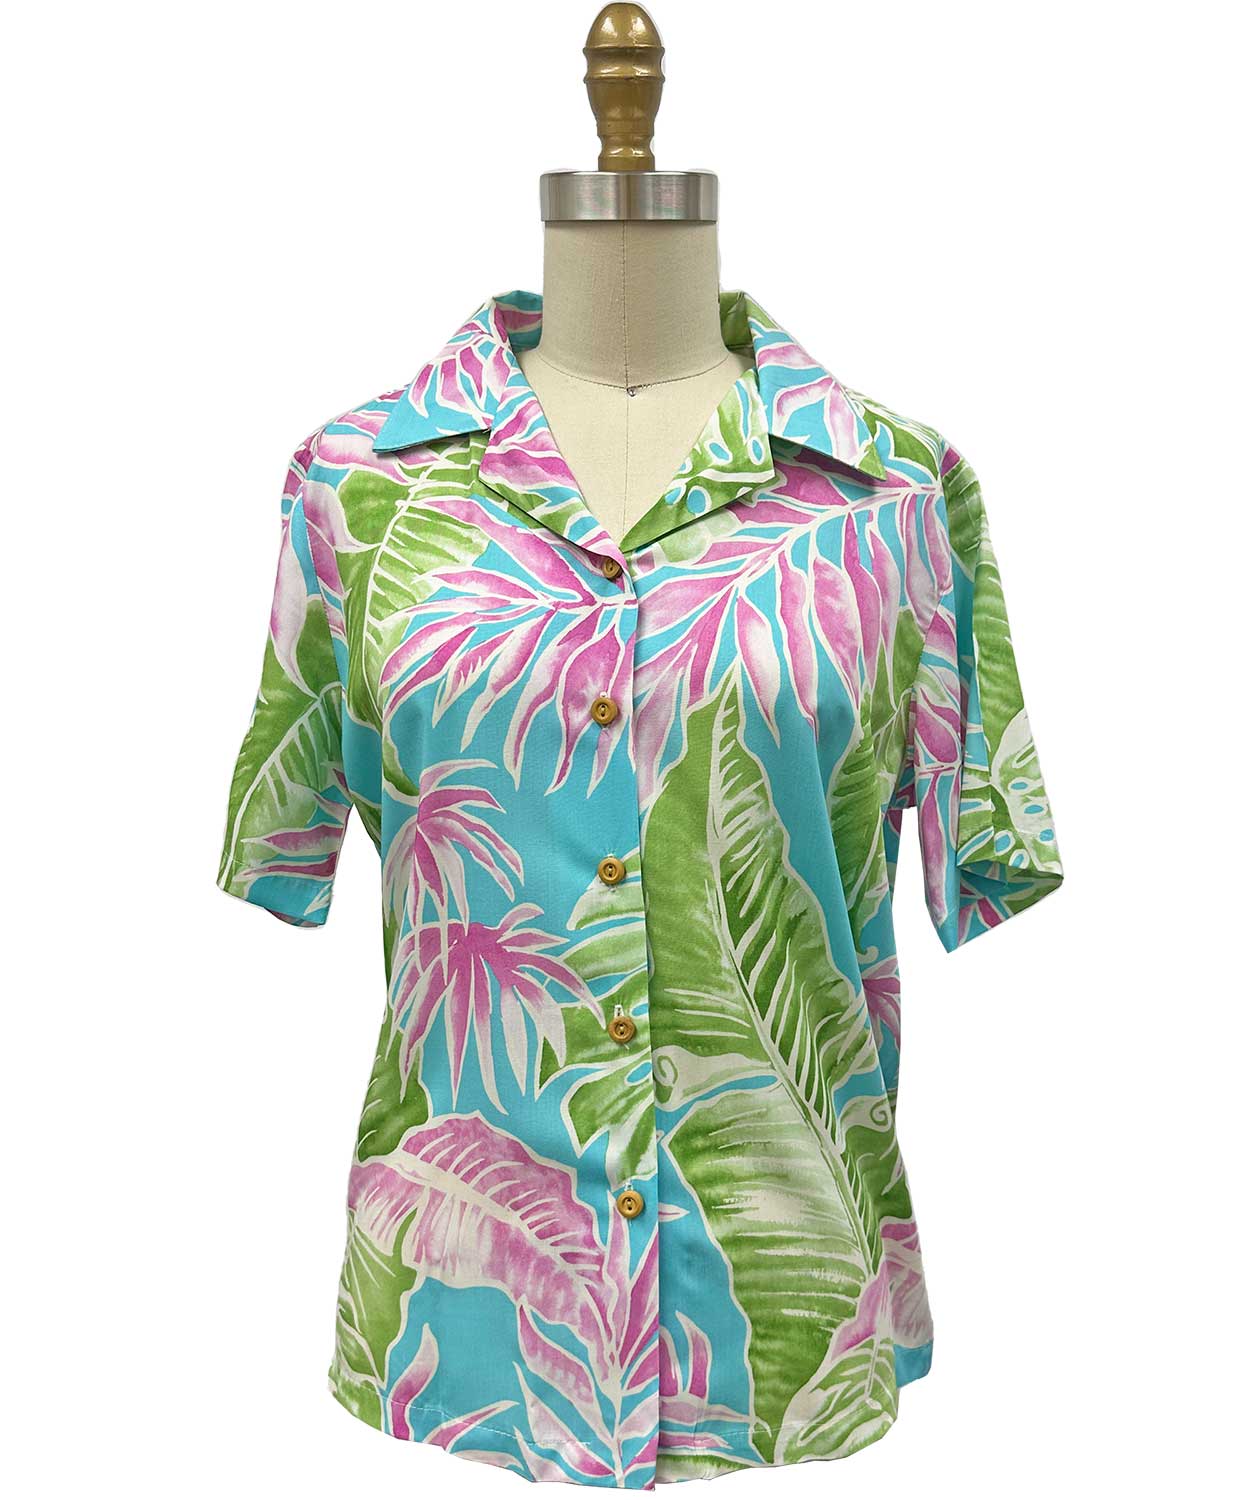 Women's Cabana Palms Aqua Camp Shirt